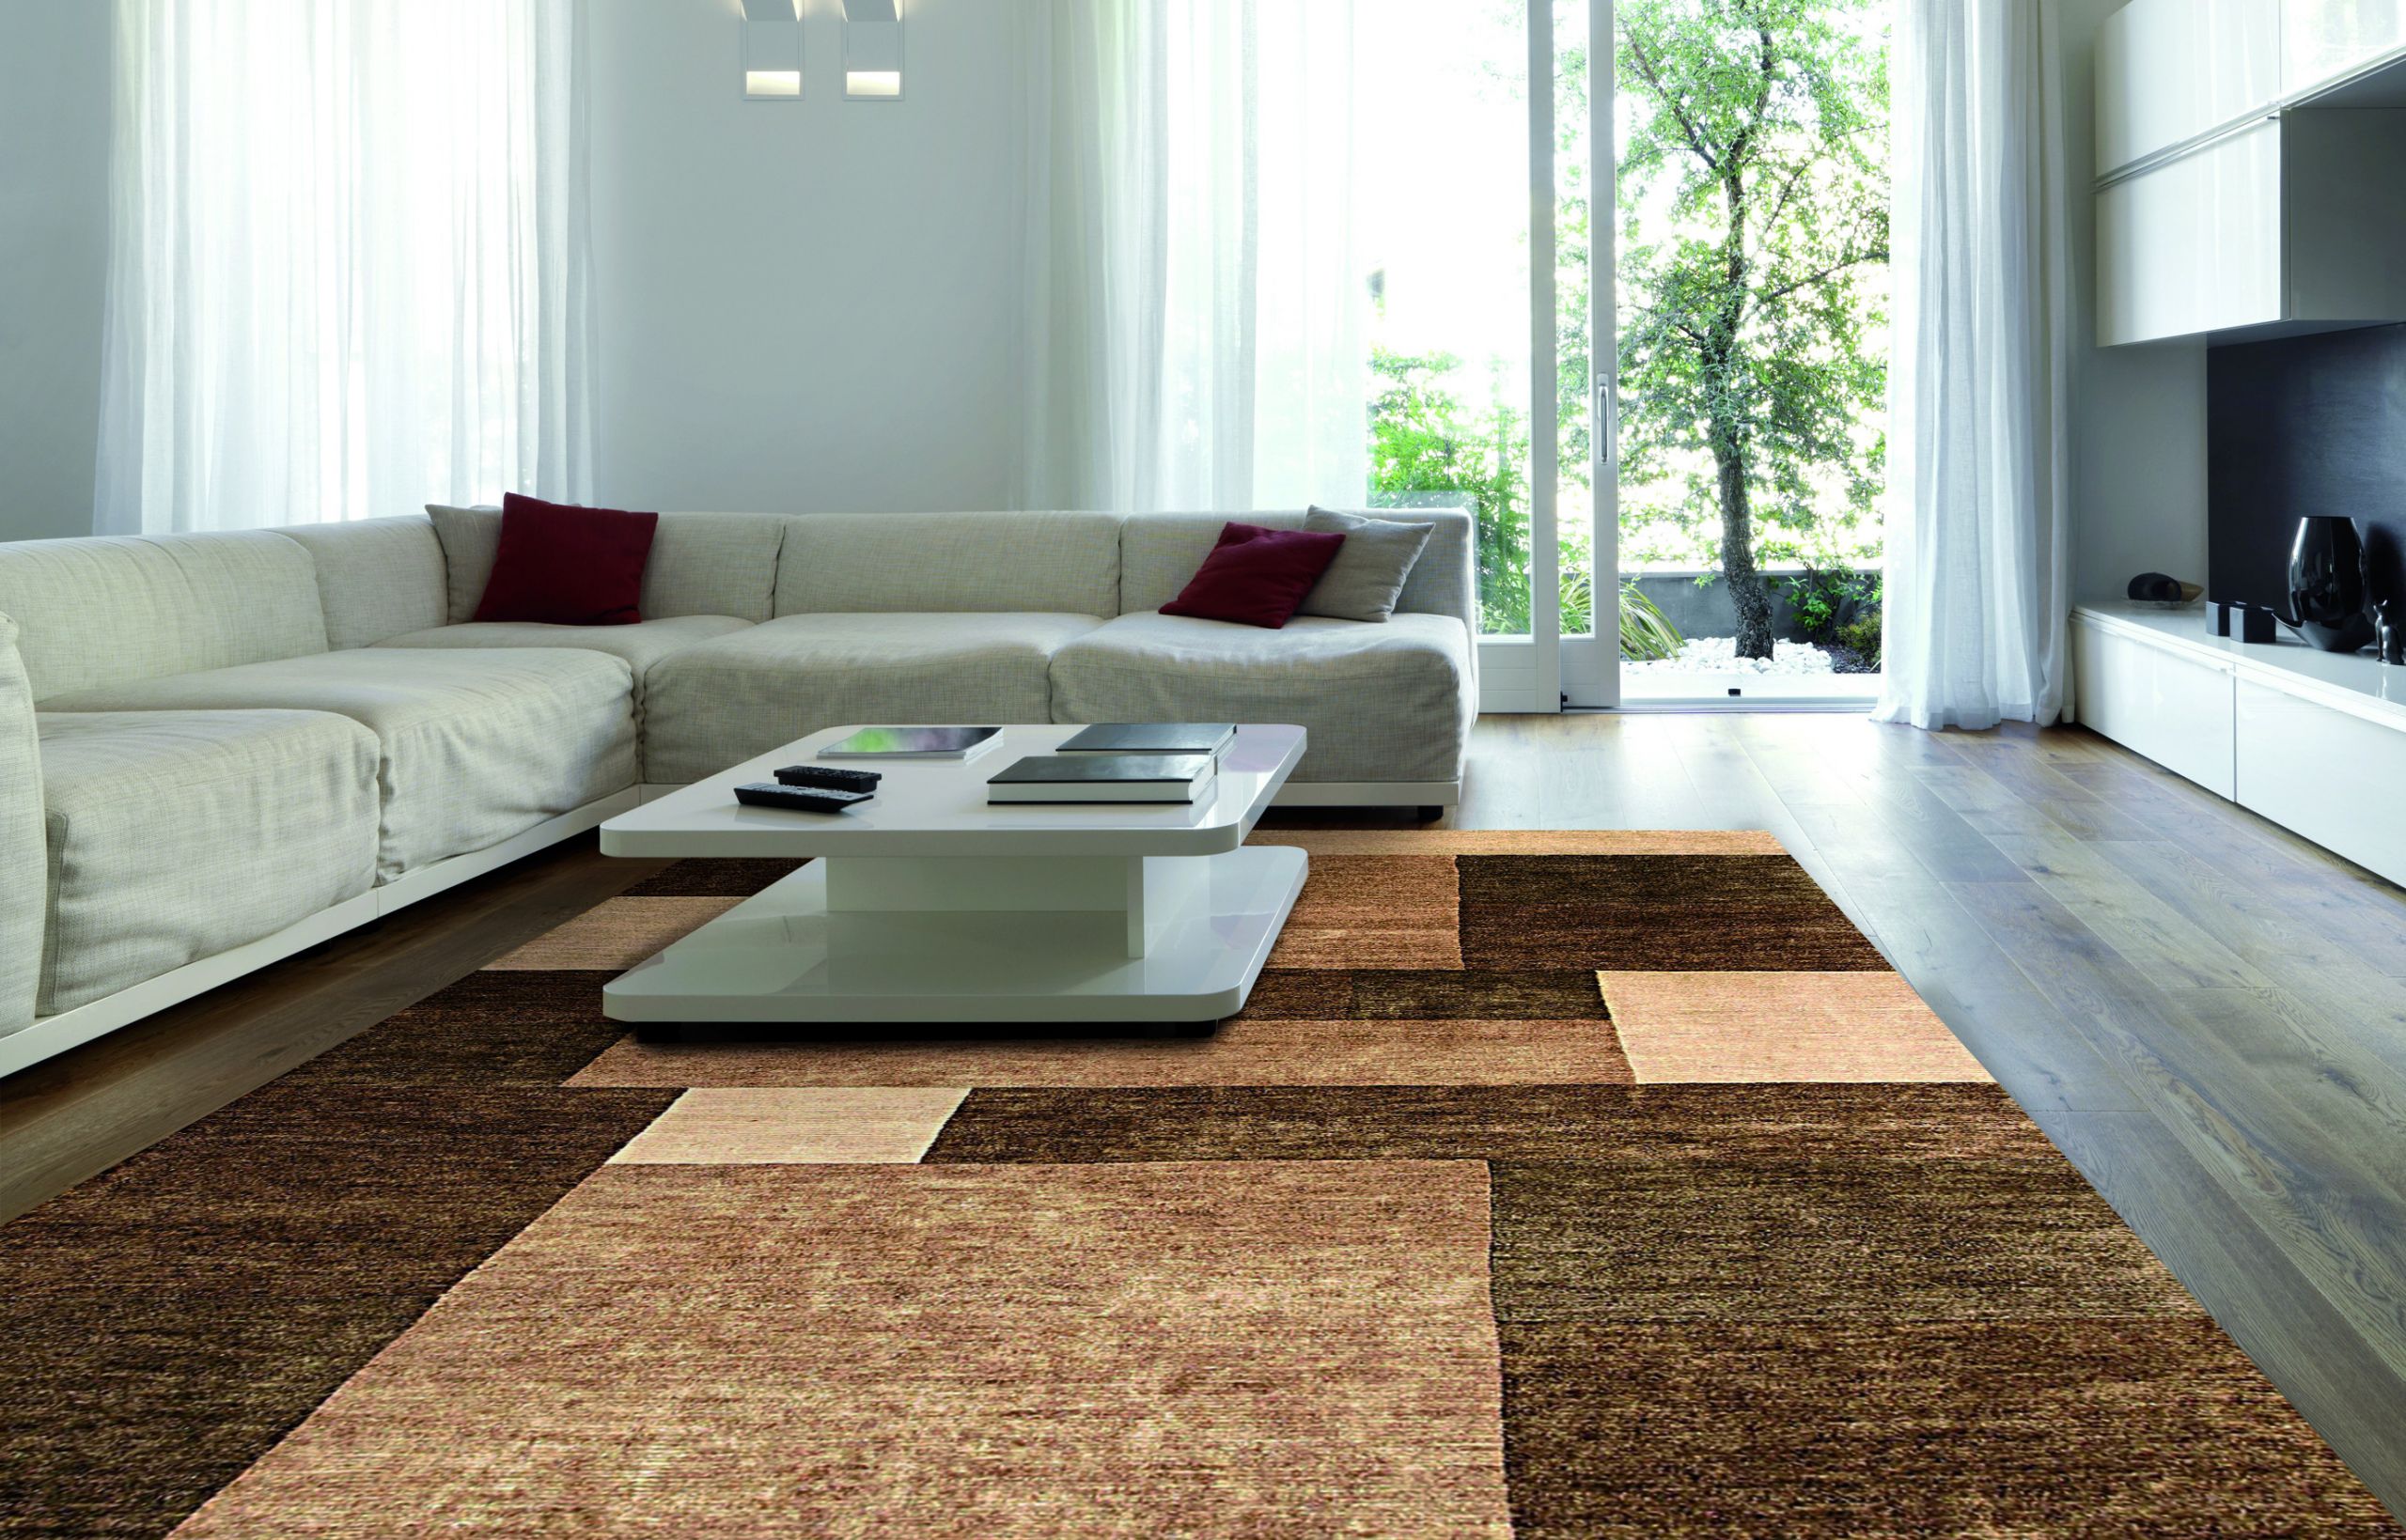 Living Room Carpet Ideas
 Carpet For Living Room InspirationSeek